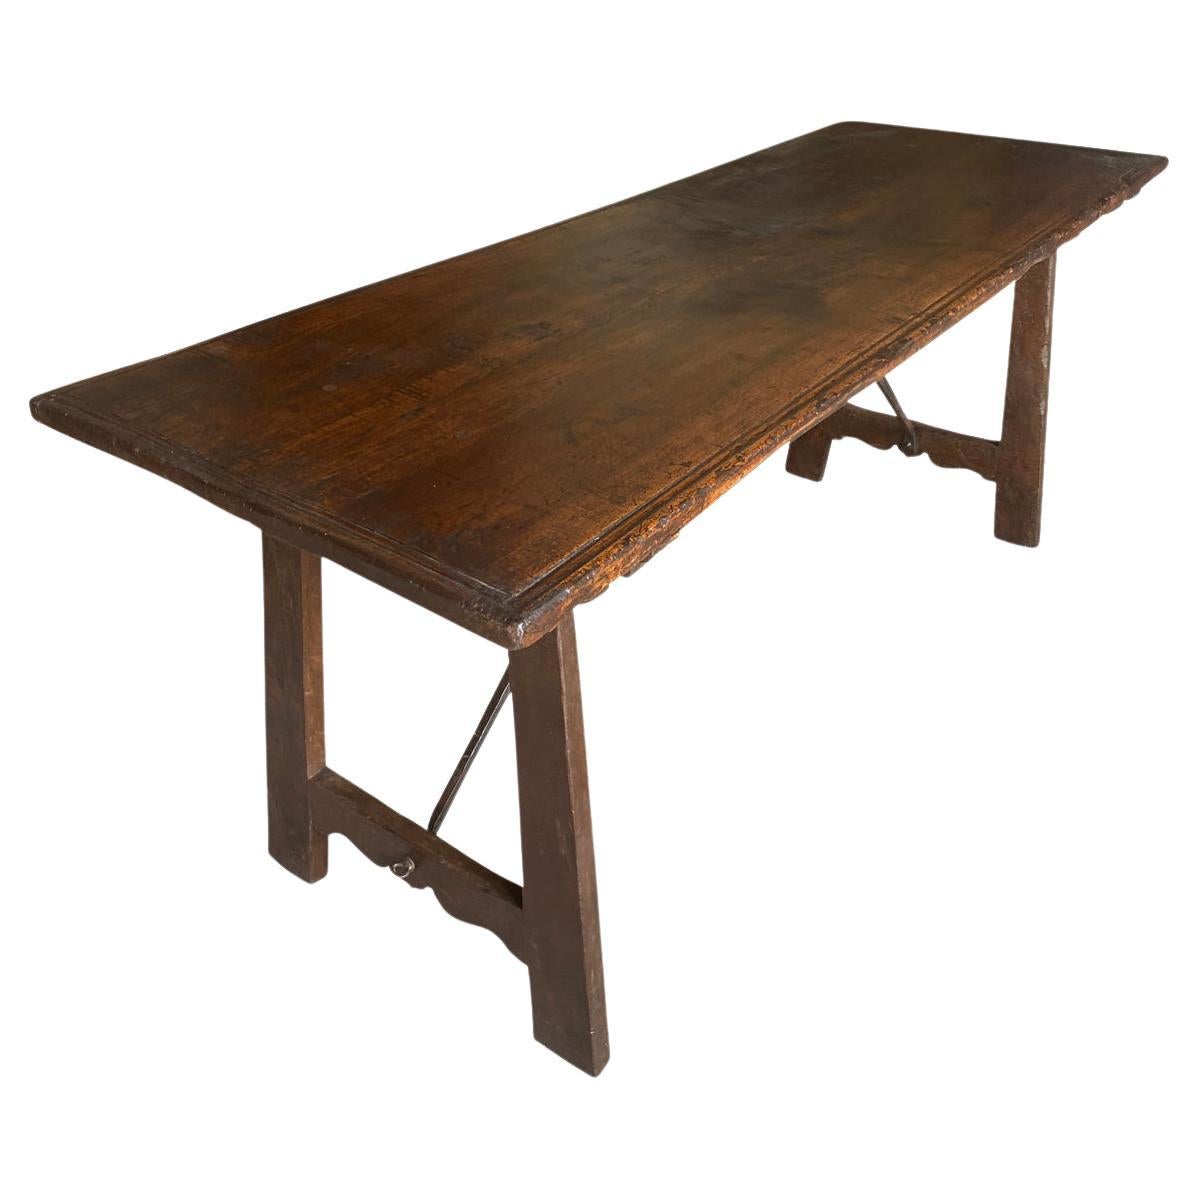 Impresionante mesa escritorio - consola del siglo XVIII procedente de la región italiana de Lombardía.  Maravillosamente construida con nogal y camillas de hierro forjado a mano.  Pátina excepcional, cálida y luminosa.  Líneas limpias y